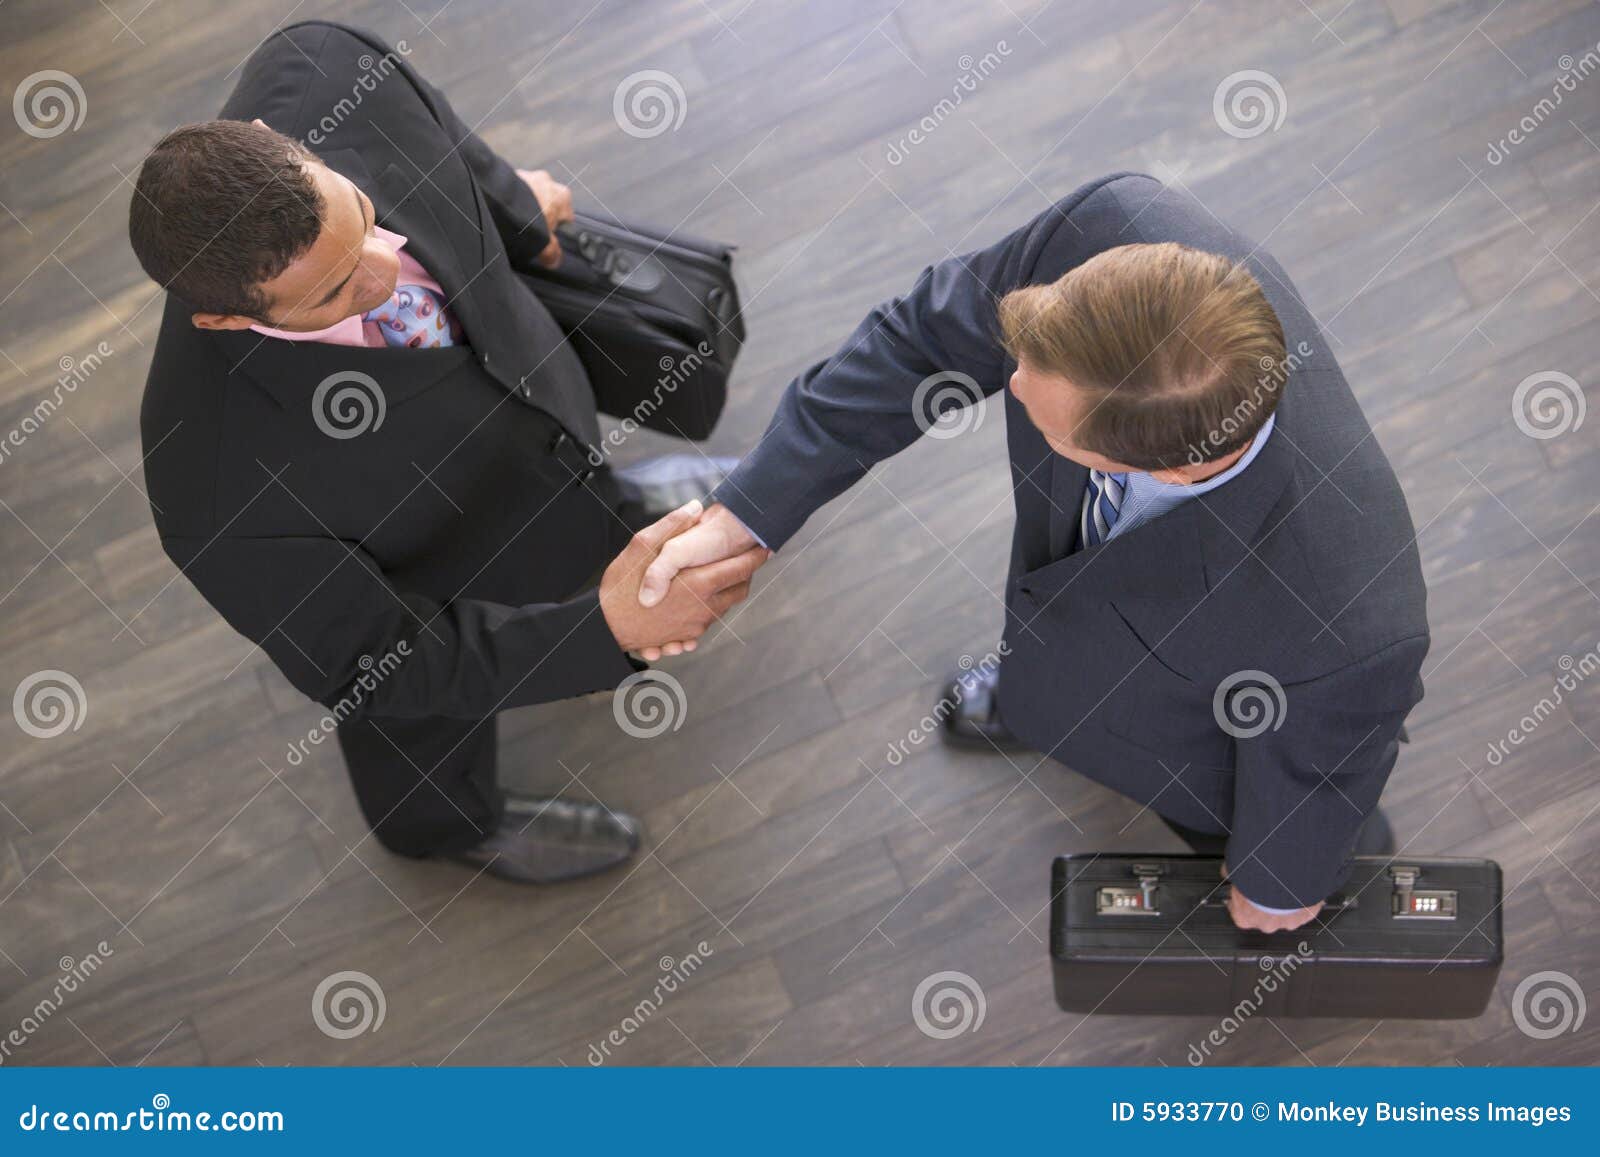 two businessmen indoors shaking hands